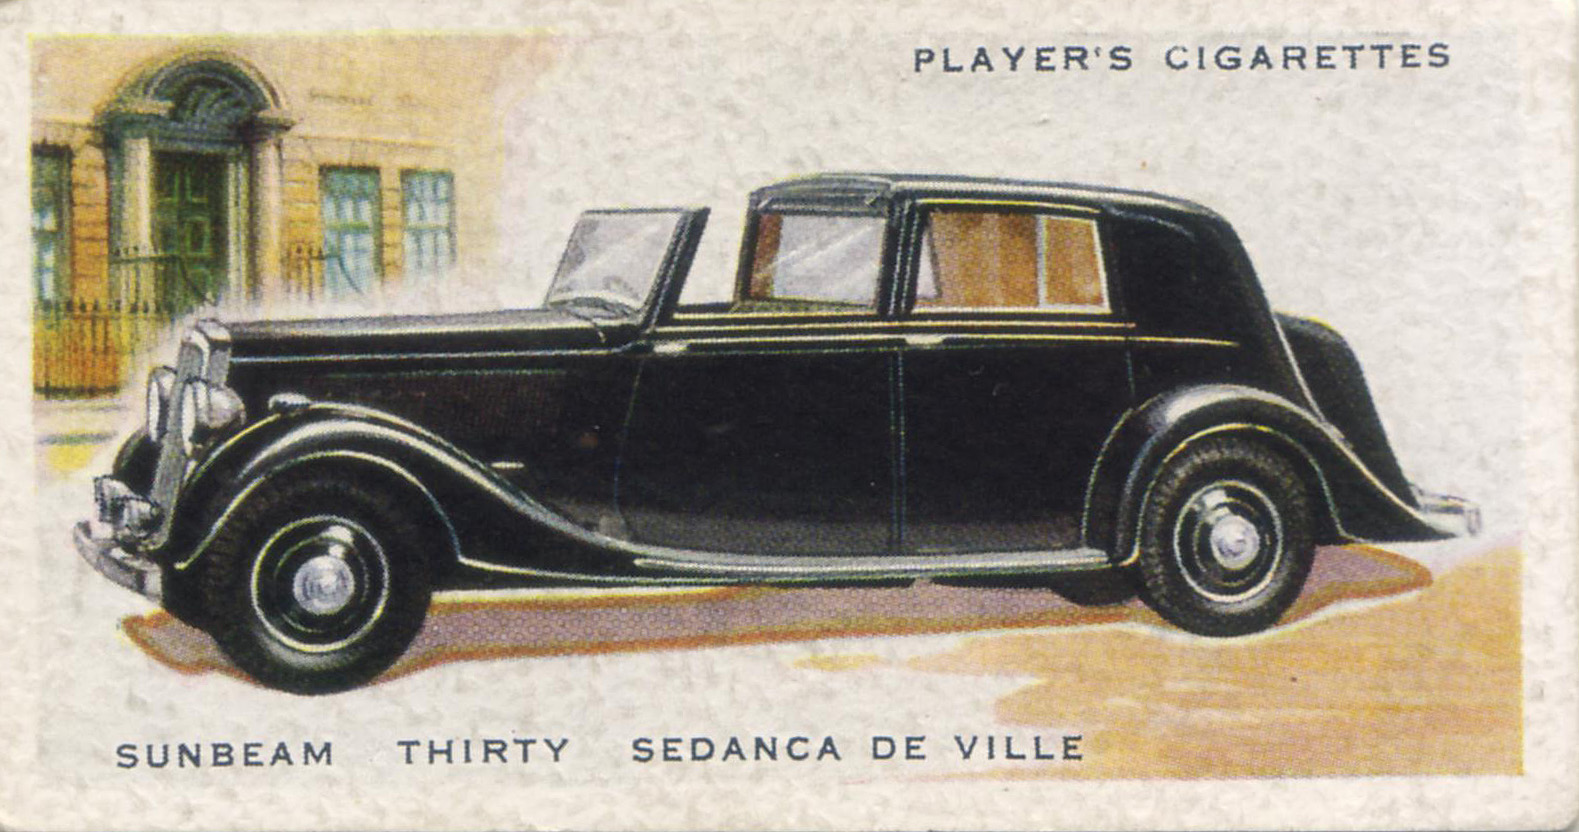 Sunbeam Sedanca De Ville. 1937 cigarette card.